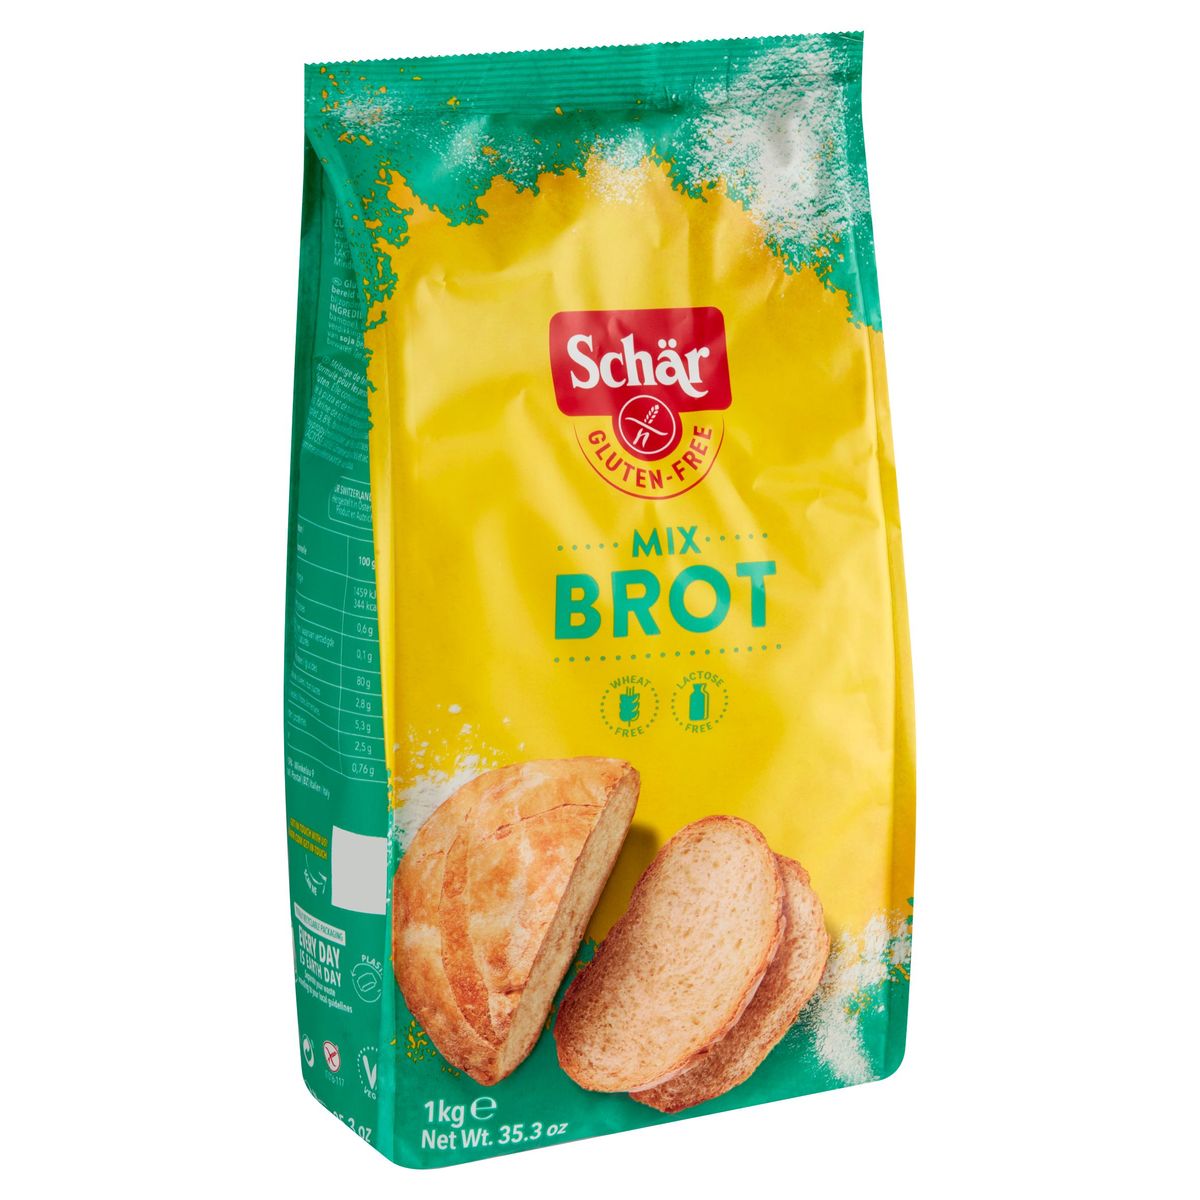 Schär Gluten-Free Mix Brot 1 kg